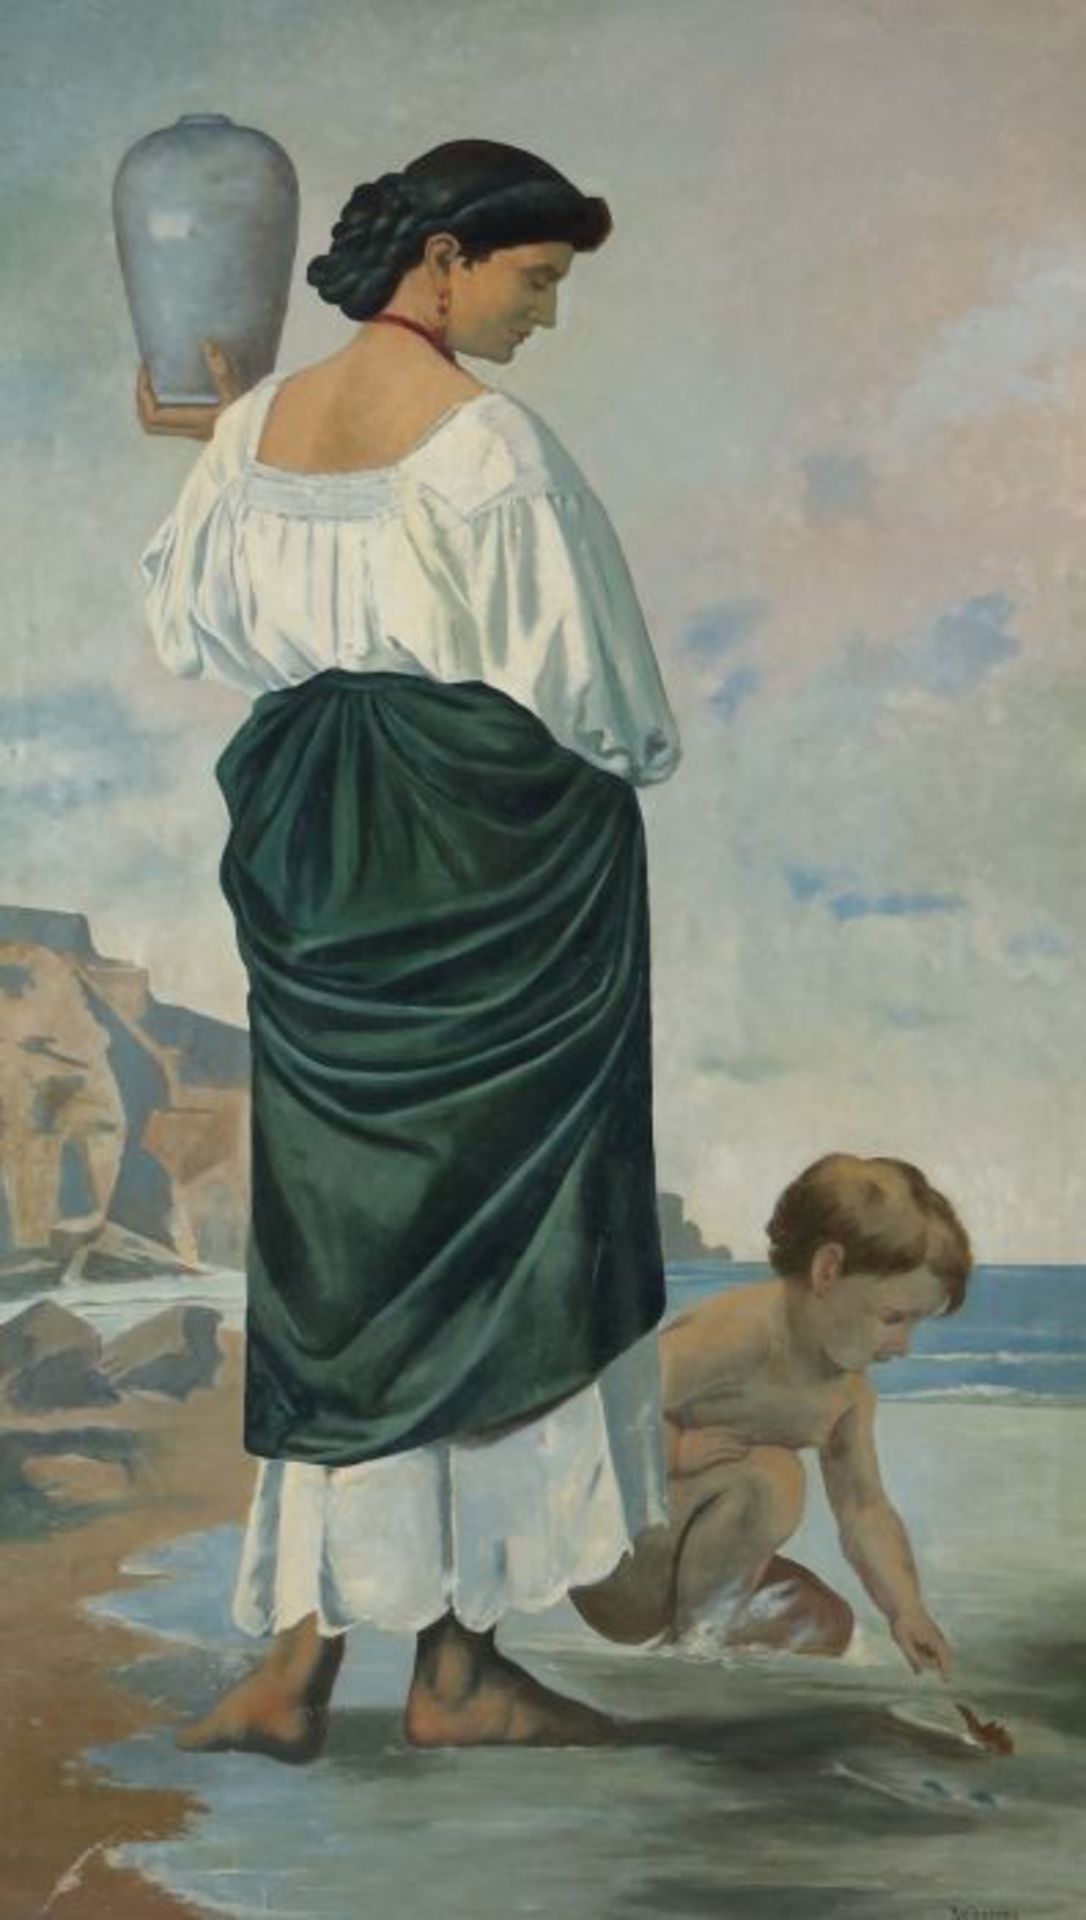 Maler des 20. Jh. "Am Strand", junge Frau, ein Gefäß in der Hand haltend, in der Brandung neben